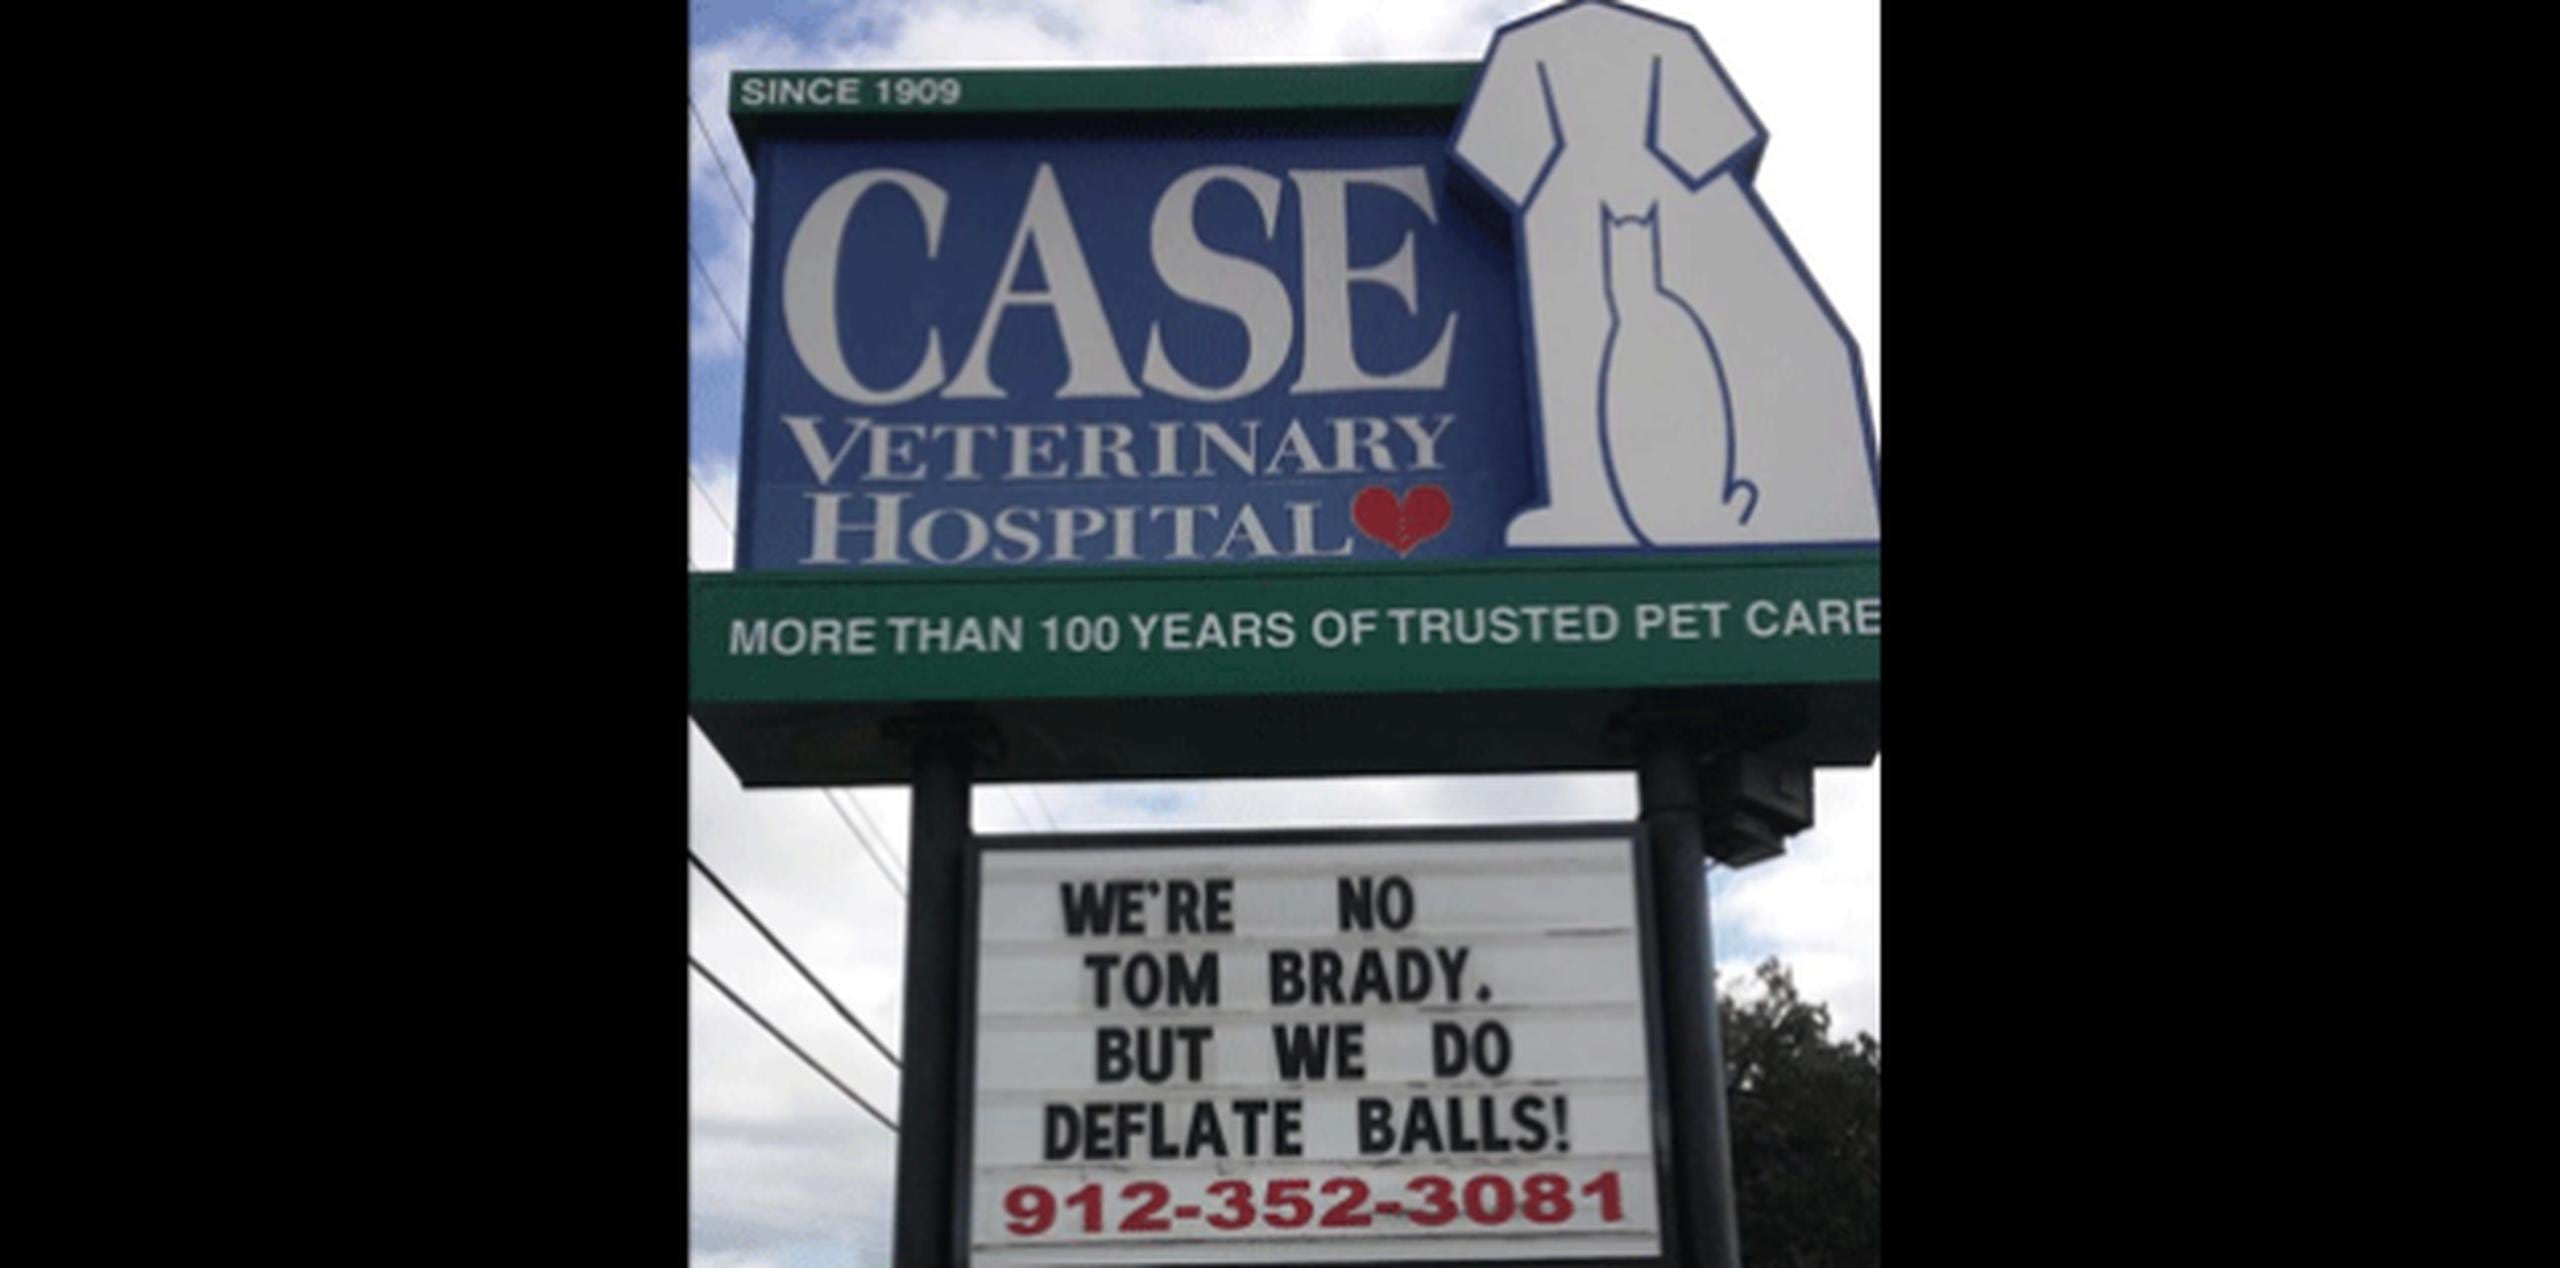 El hospital Case de Savannah apeló al humor y colgó un creativo mensaje que lee “No somos Tom Brady, pero desinflamos pelotas”. (Facebook)